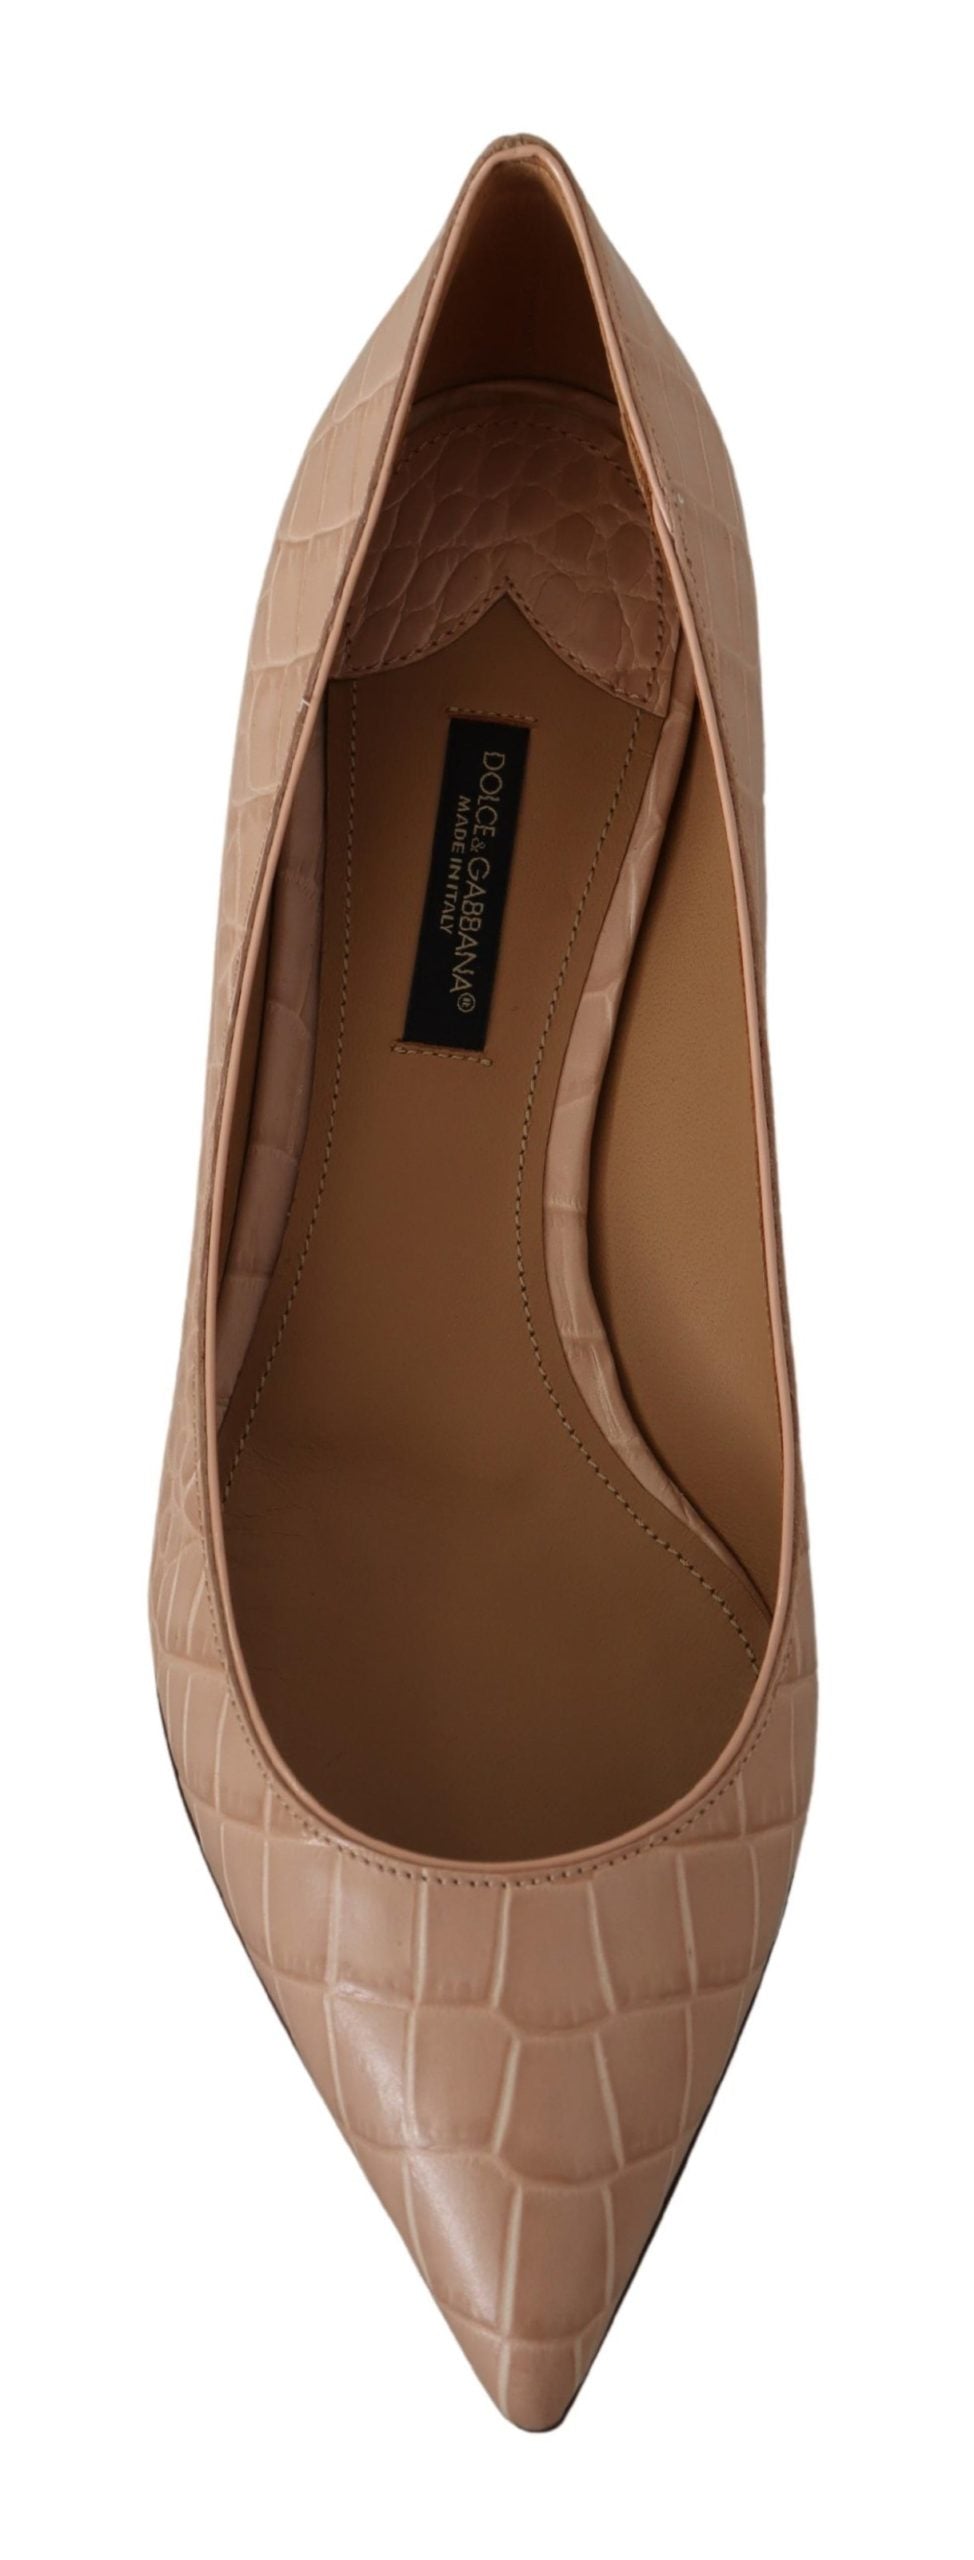 Dolce & Gabbana Beige Leather Kitten Heels Pumps Shoes - DEA STILOSA MILANO